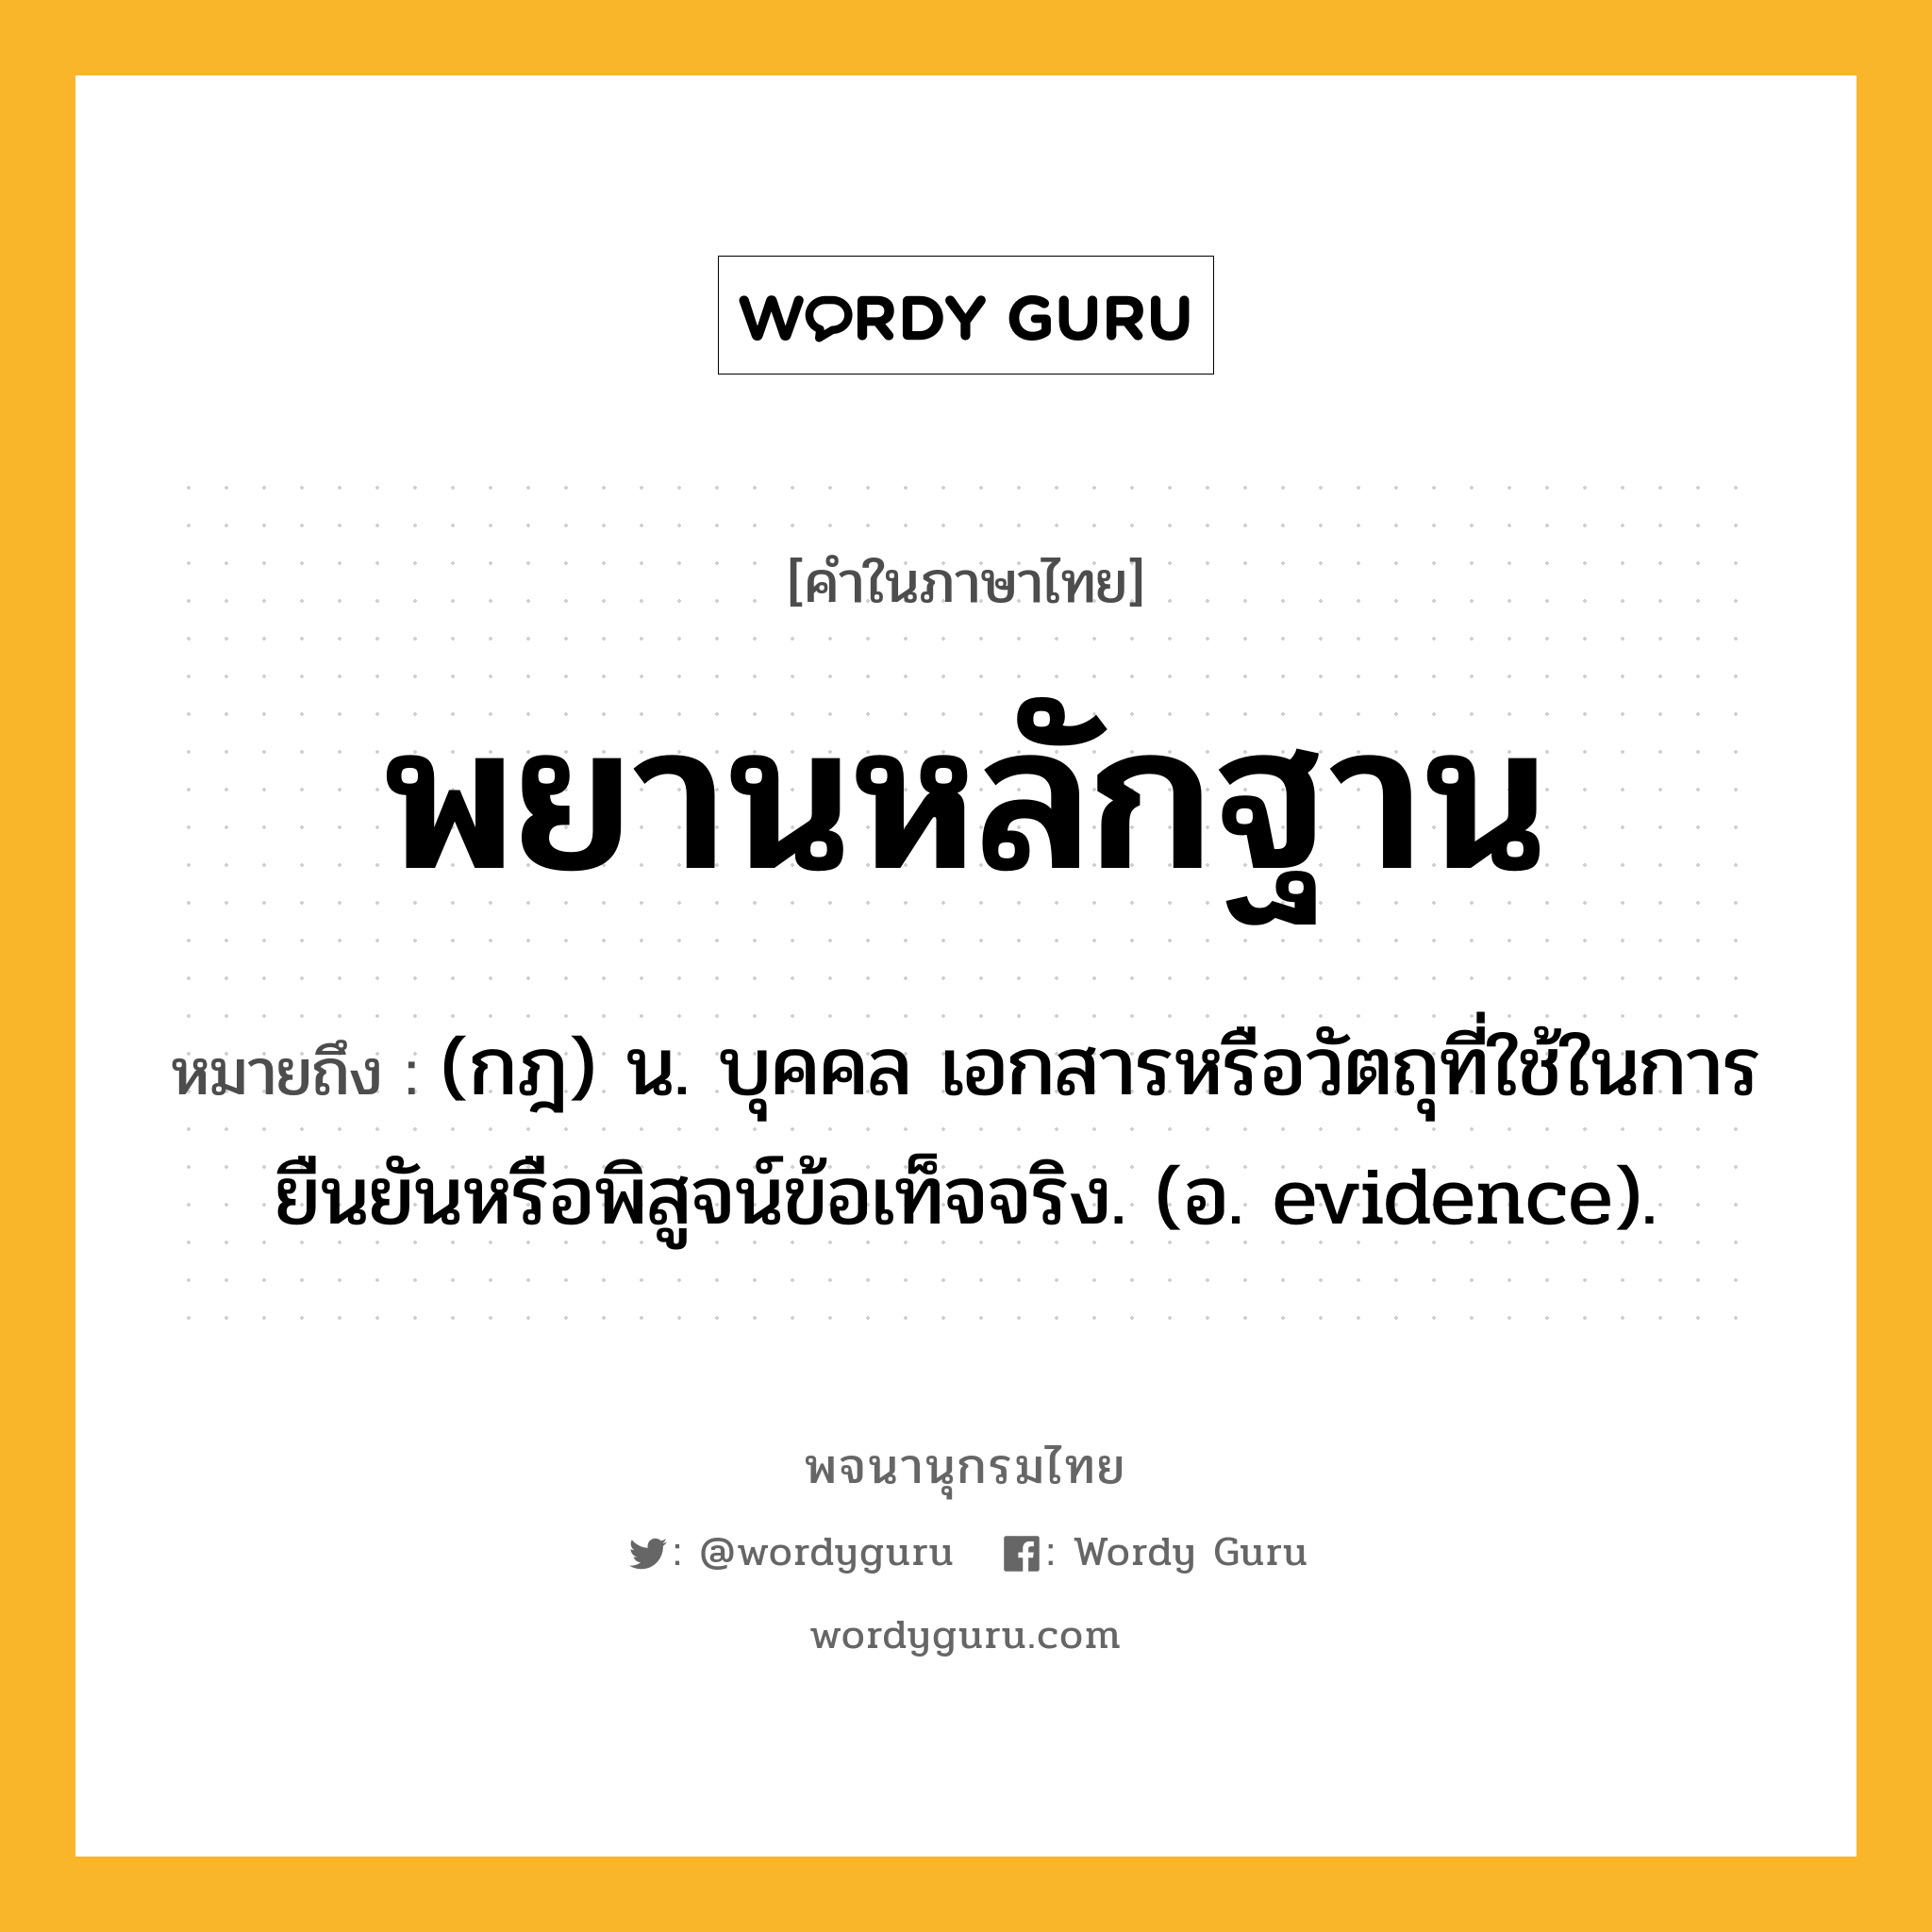 พยานหลักฐาน ความหมาย หมายถึงอะไร?, คำในภาษาไทย พยานหลักฐาน หมายถึง (กฎ) น. บุคคล เอกสารหรือวัตถุที่ใช้ในการยืนยันหรือพิสูจน์ข้อเท็จจริง. (อ. evidence).